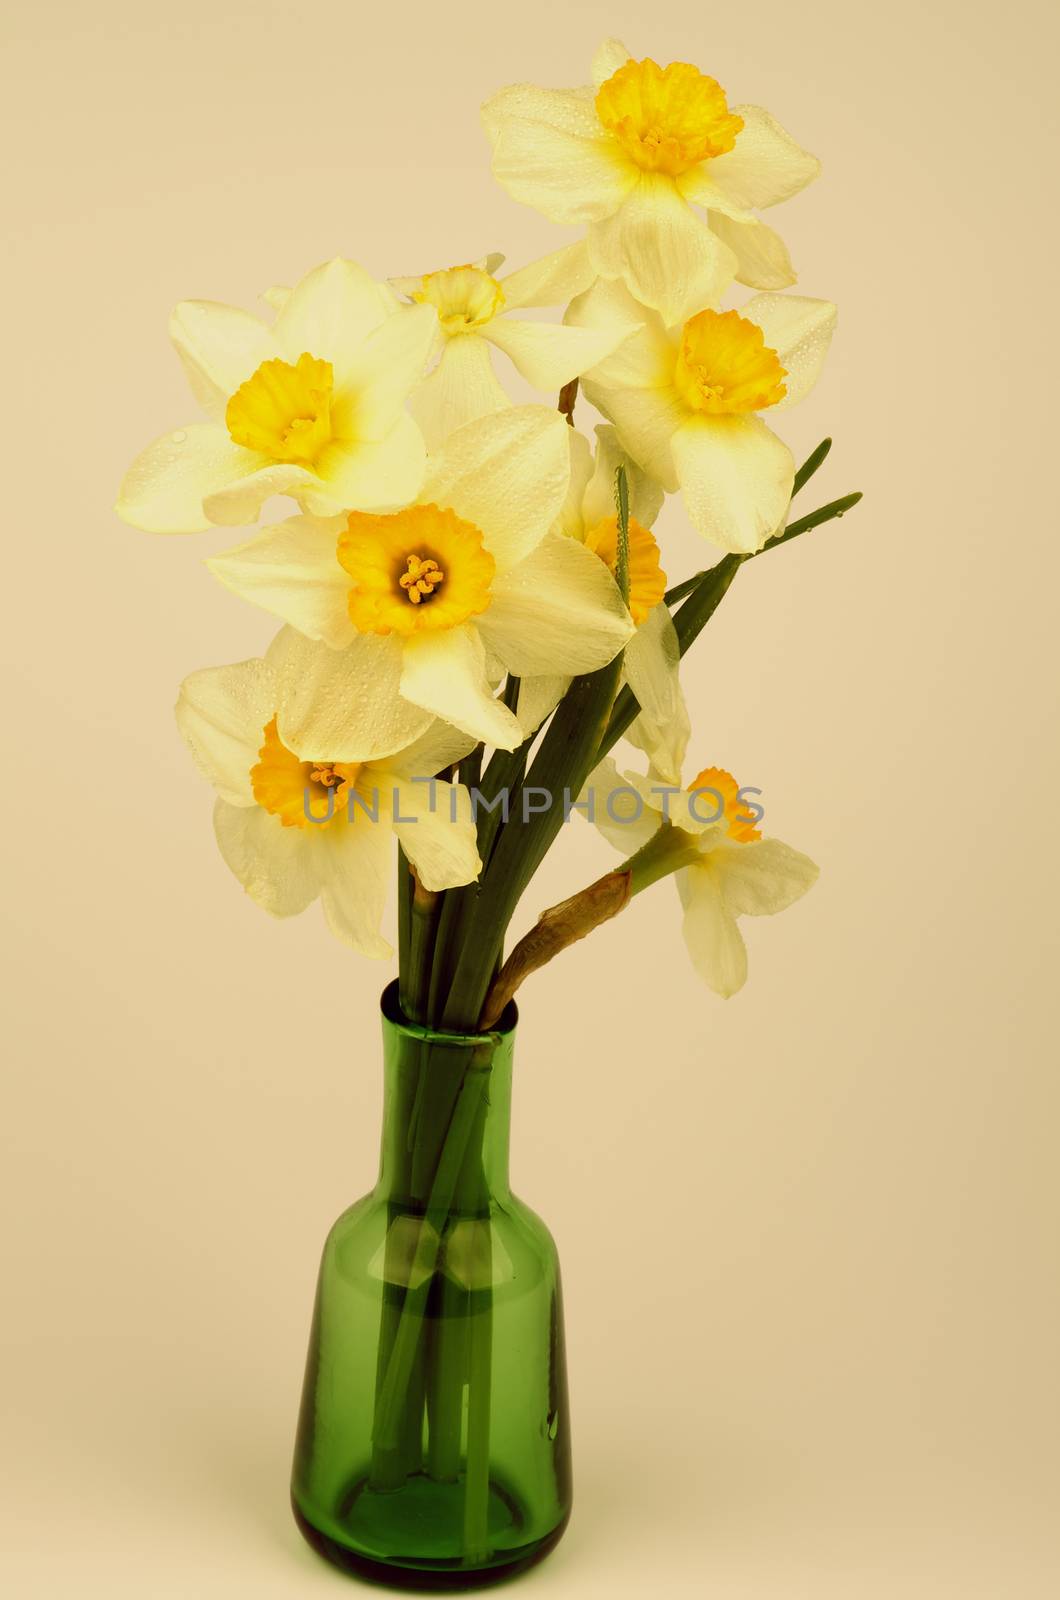 Yellow Daffodils Bunch by zhekos